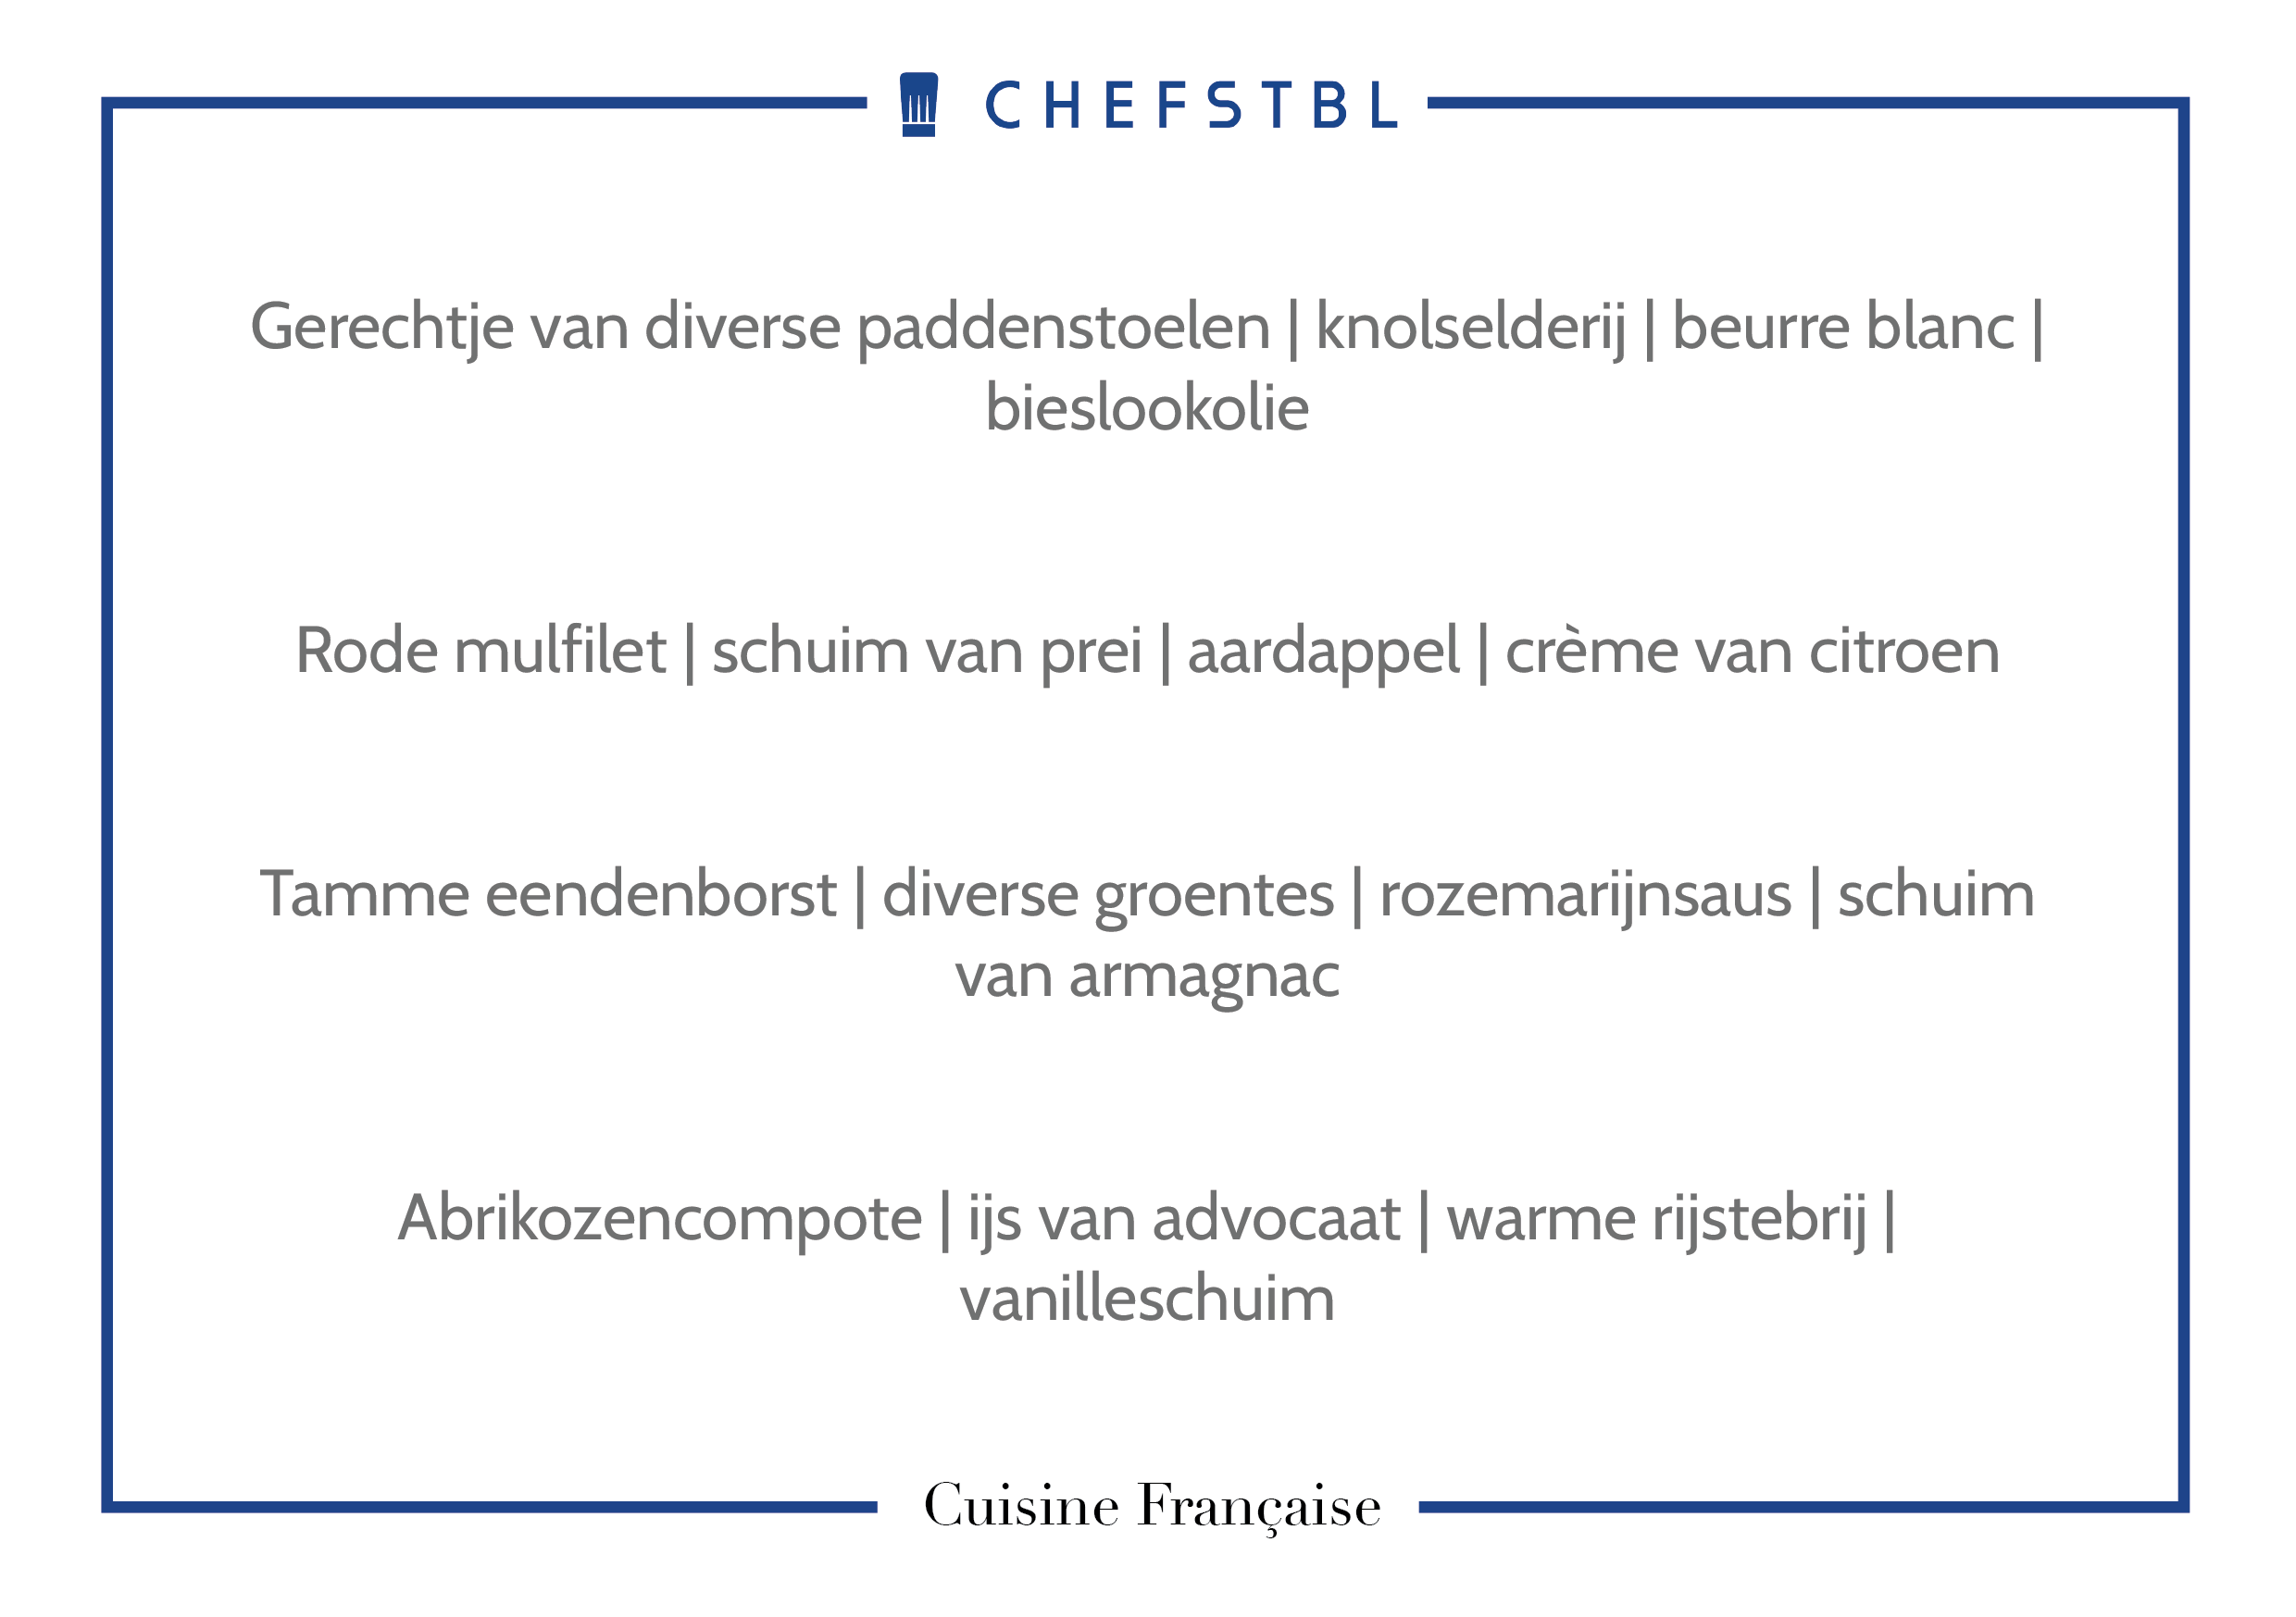 Voorbeeldmenu CHEFSTBL Cuisine Française